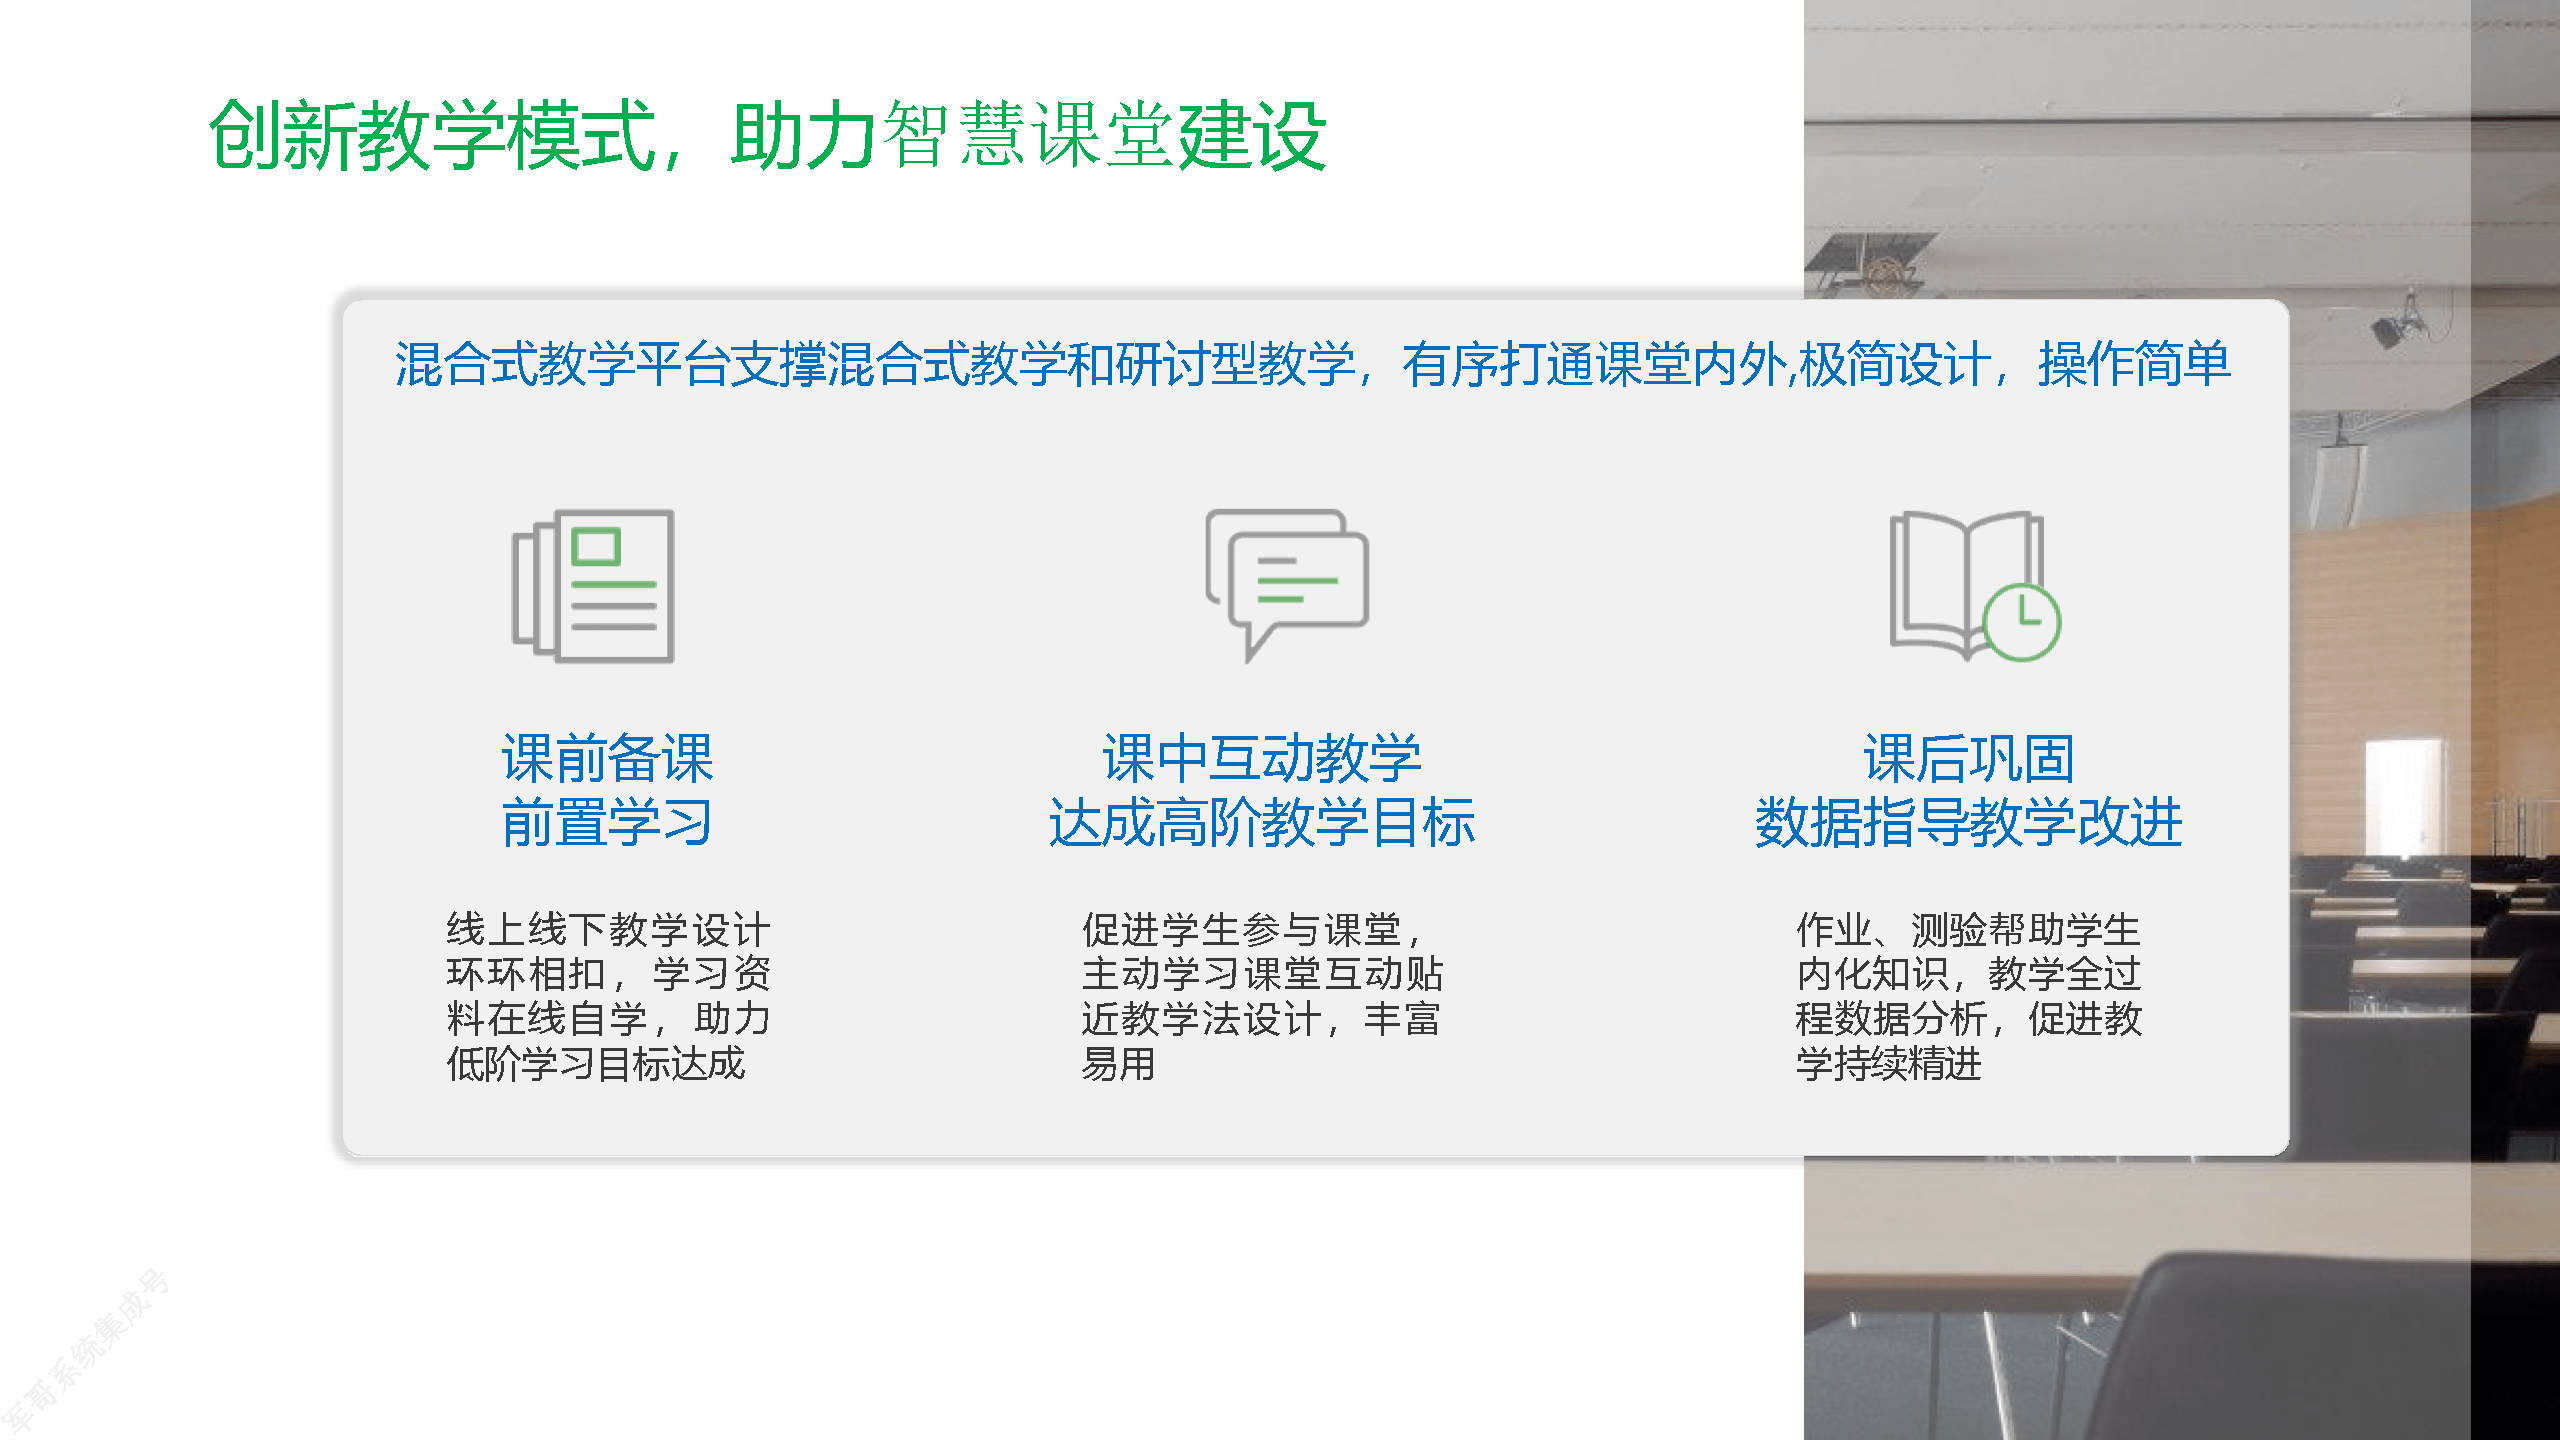 南京机电教务系统_重电教务系统_i东电教务系统